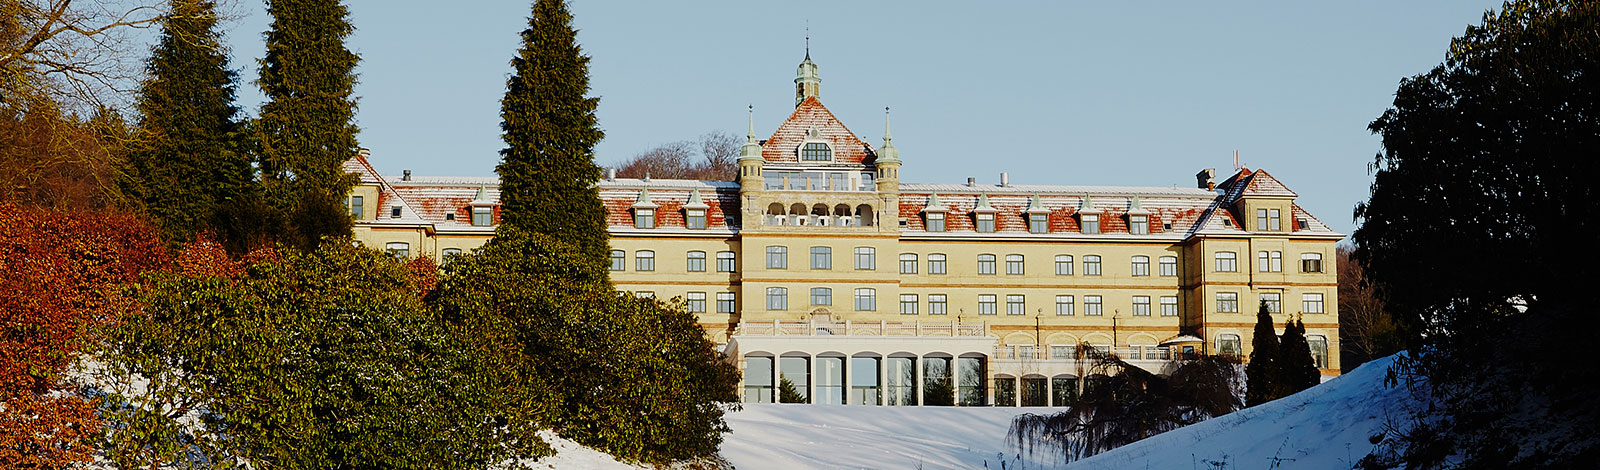 Nyd et dejligt jule weekendophold i Hotel Vejlefjords stemningsfulde rammer